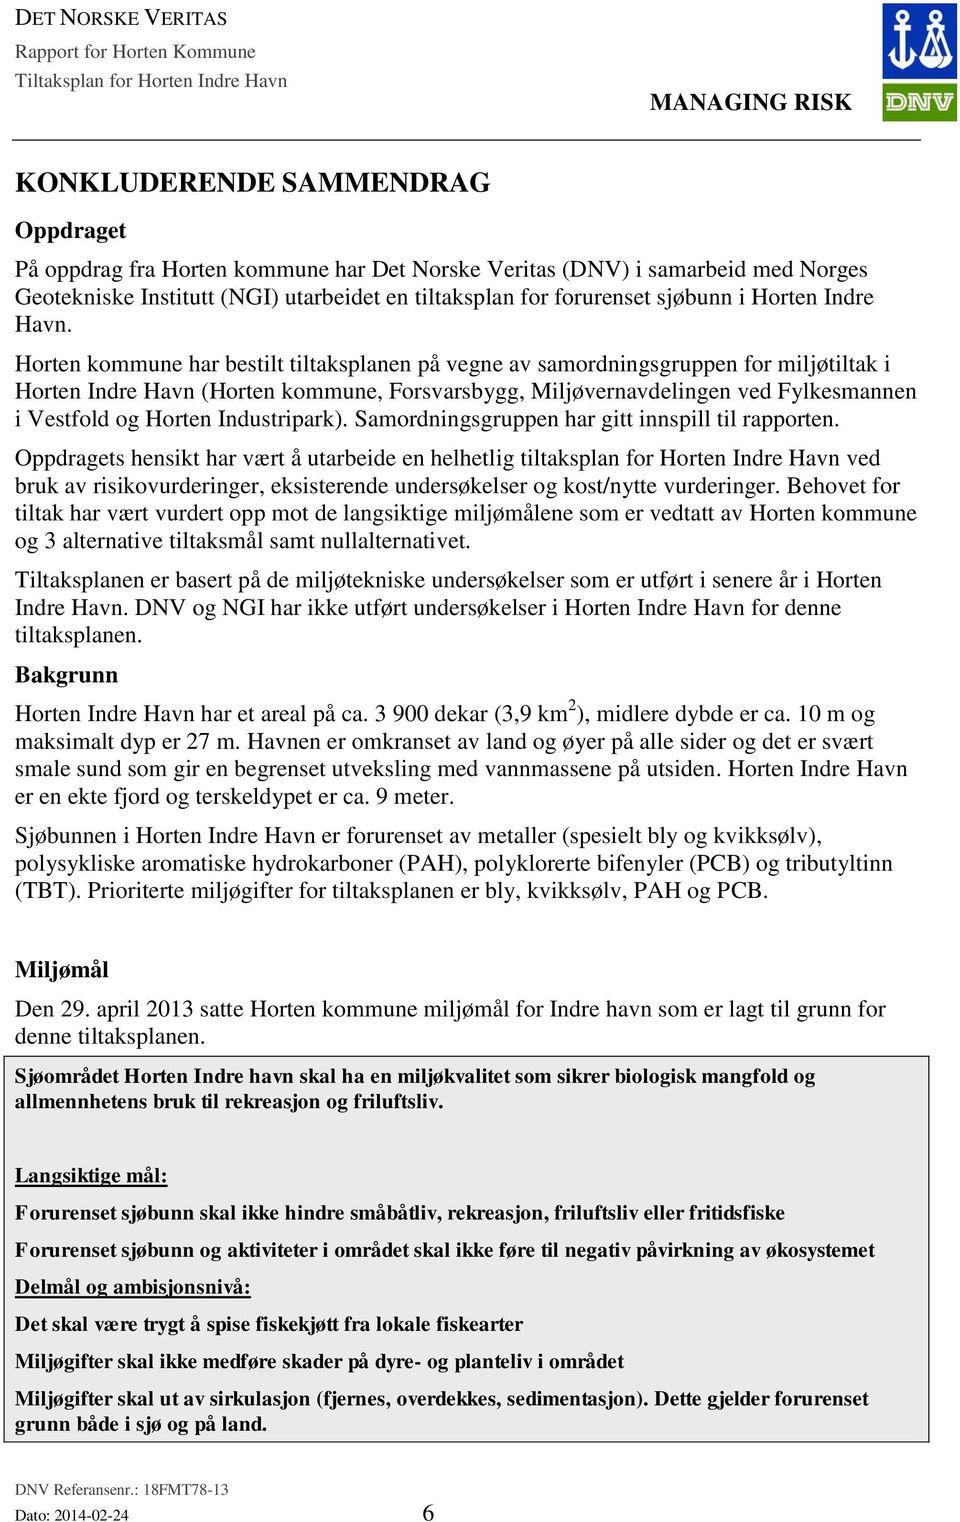 Horten kommune har bestilt tiltaksplanen på vegne av samordningsgruppen for miljøtiltak i Horten Indre Havn (Horten kommune, Forsvarsbygg, Miljøvernavdelingen ved Fylkesmannen i Vestfold og Horten